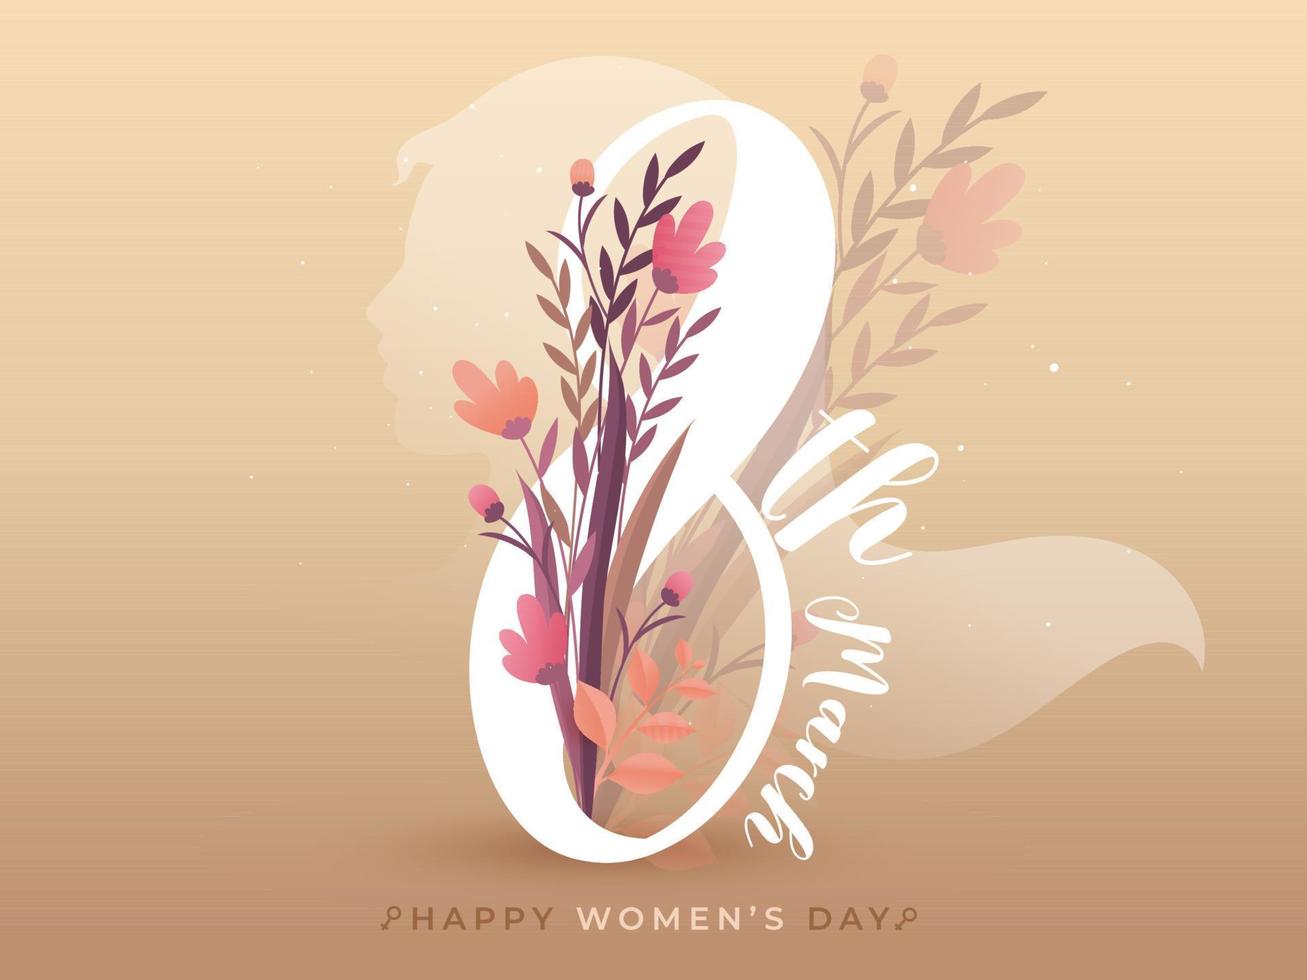 8:e Mars text dekorerad med blommor och löv på persika brun bakgrund för Lycklig kvinnors dag. vektor